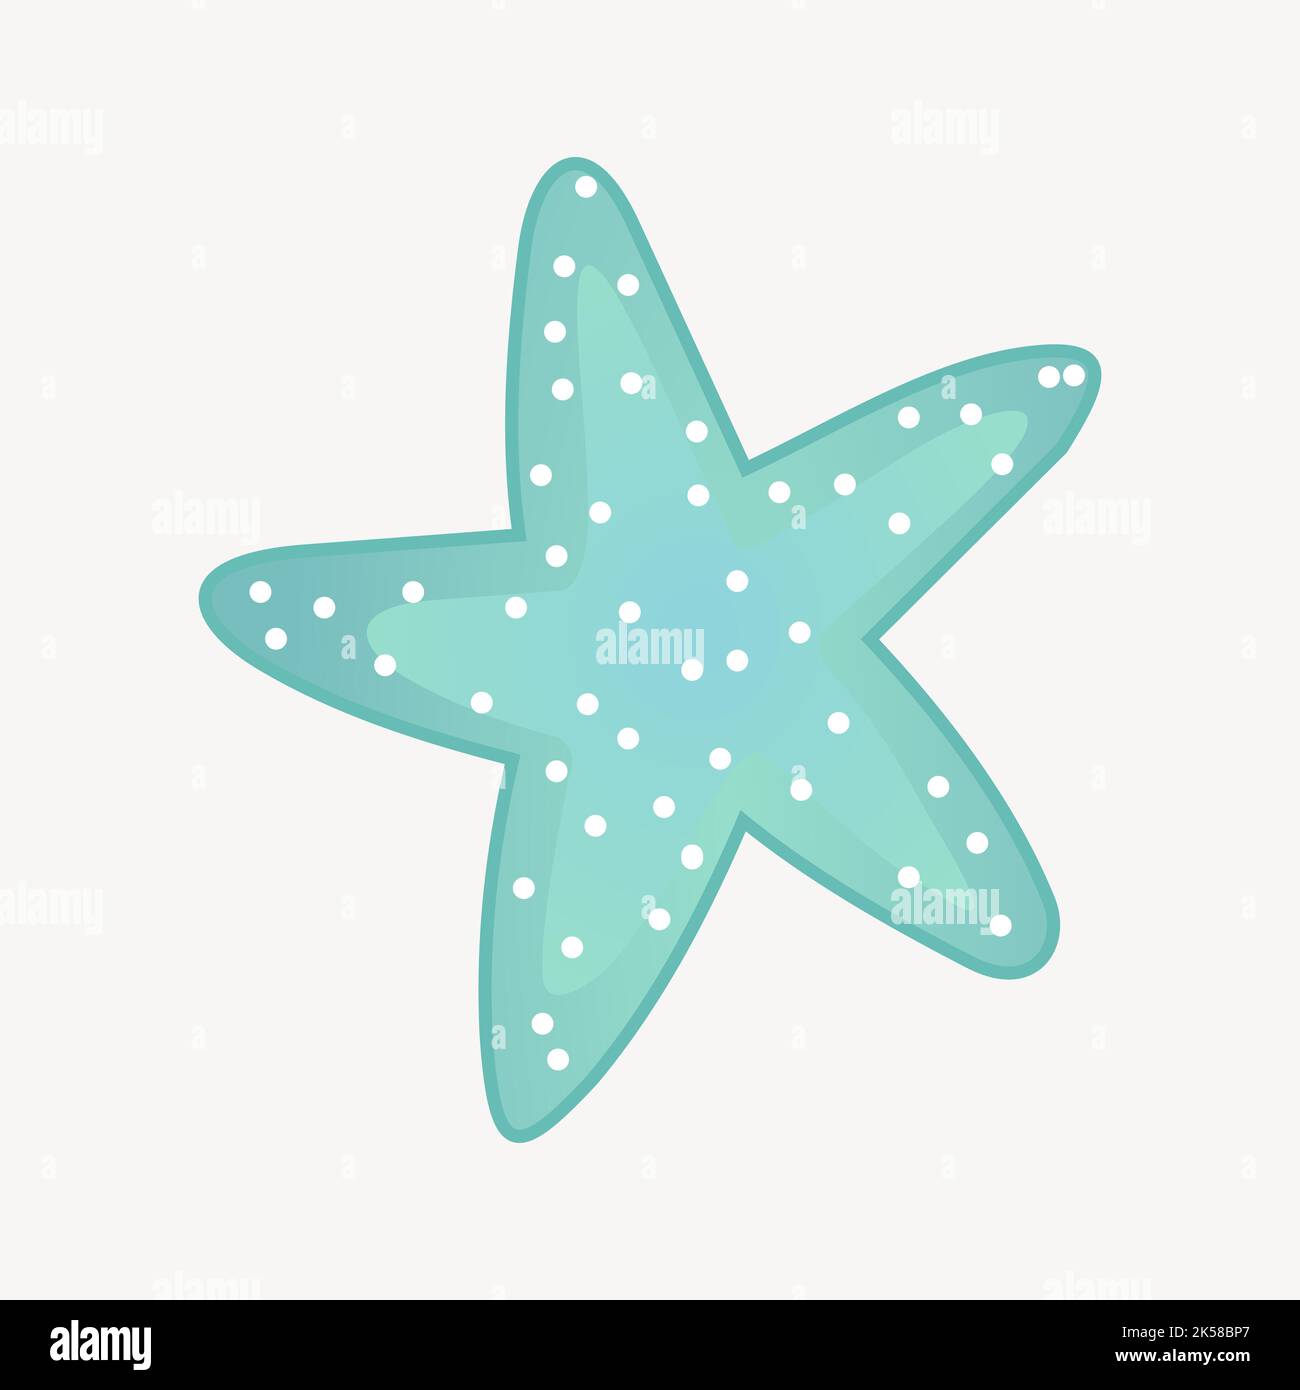 Starfish clipart, vecteur d'illustration de la vie marine. Illustration de Vecteur